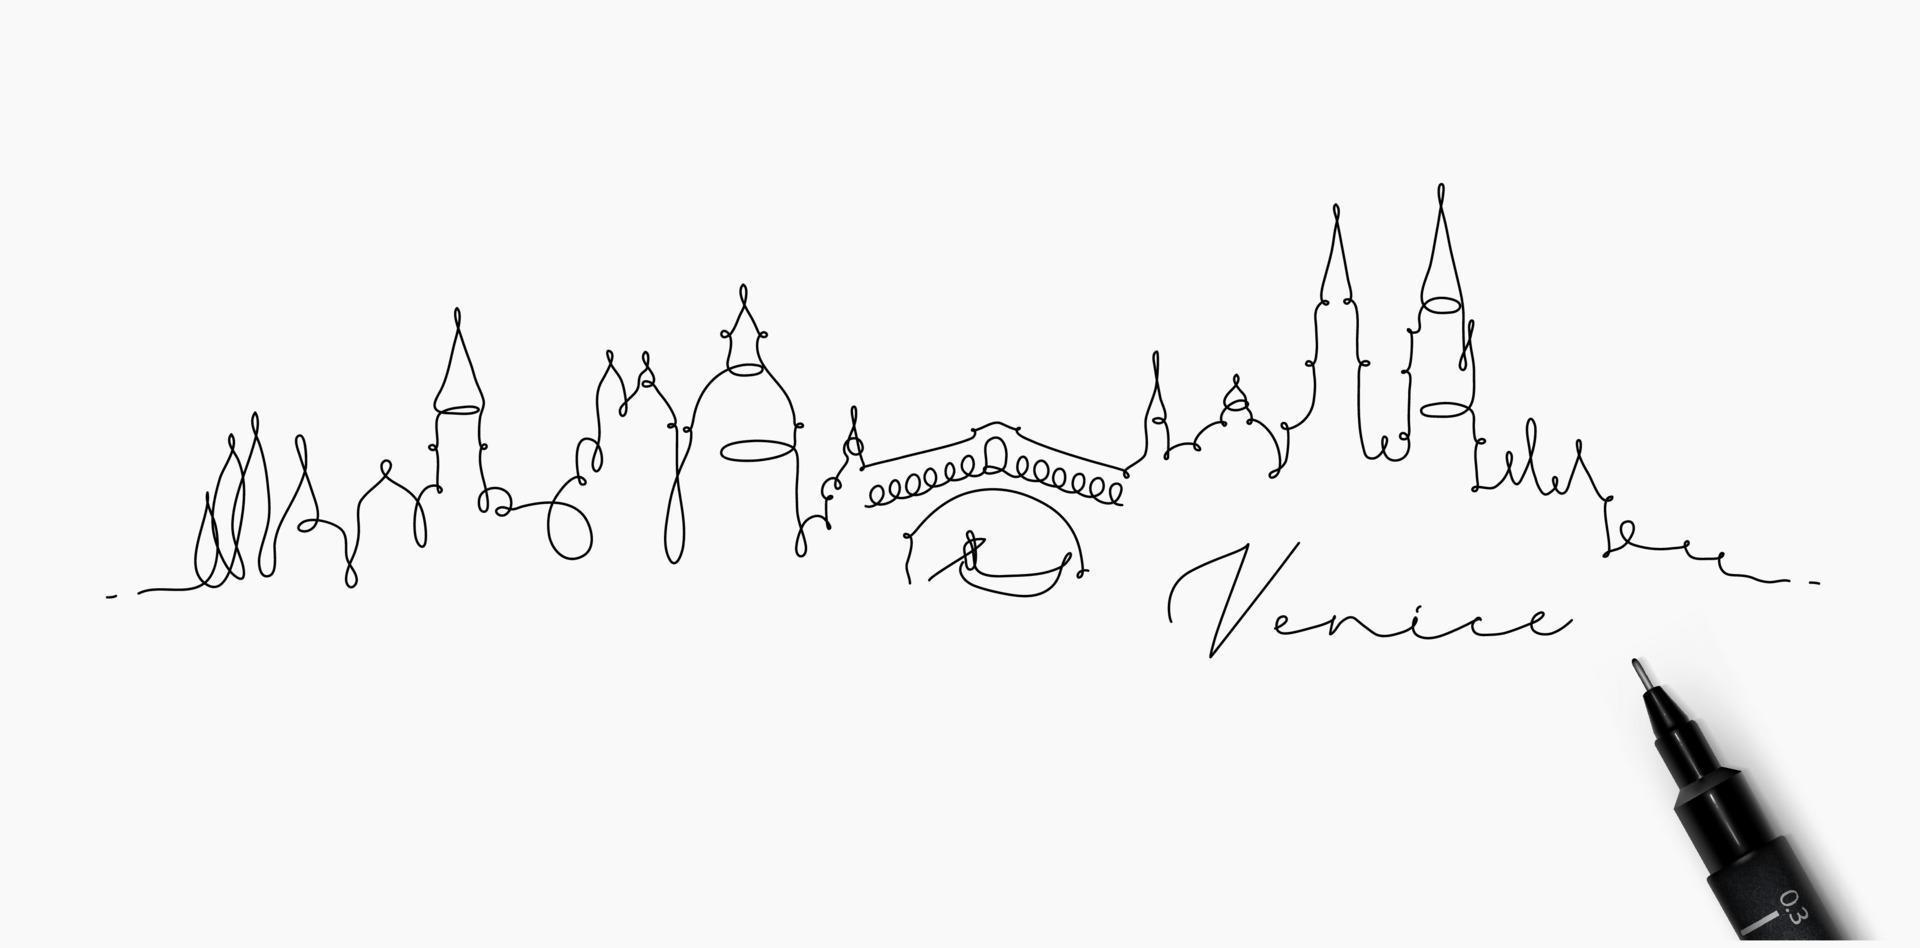 silueta de la ciudad de venecia en un dibujo de estilo de línea de lápiz con líneas negras sobre fondo blanco vector